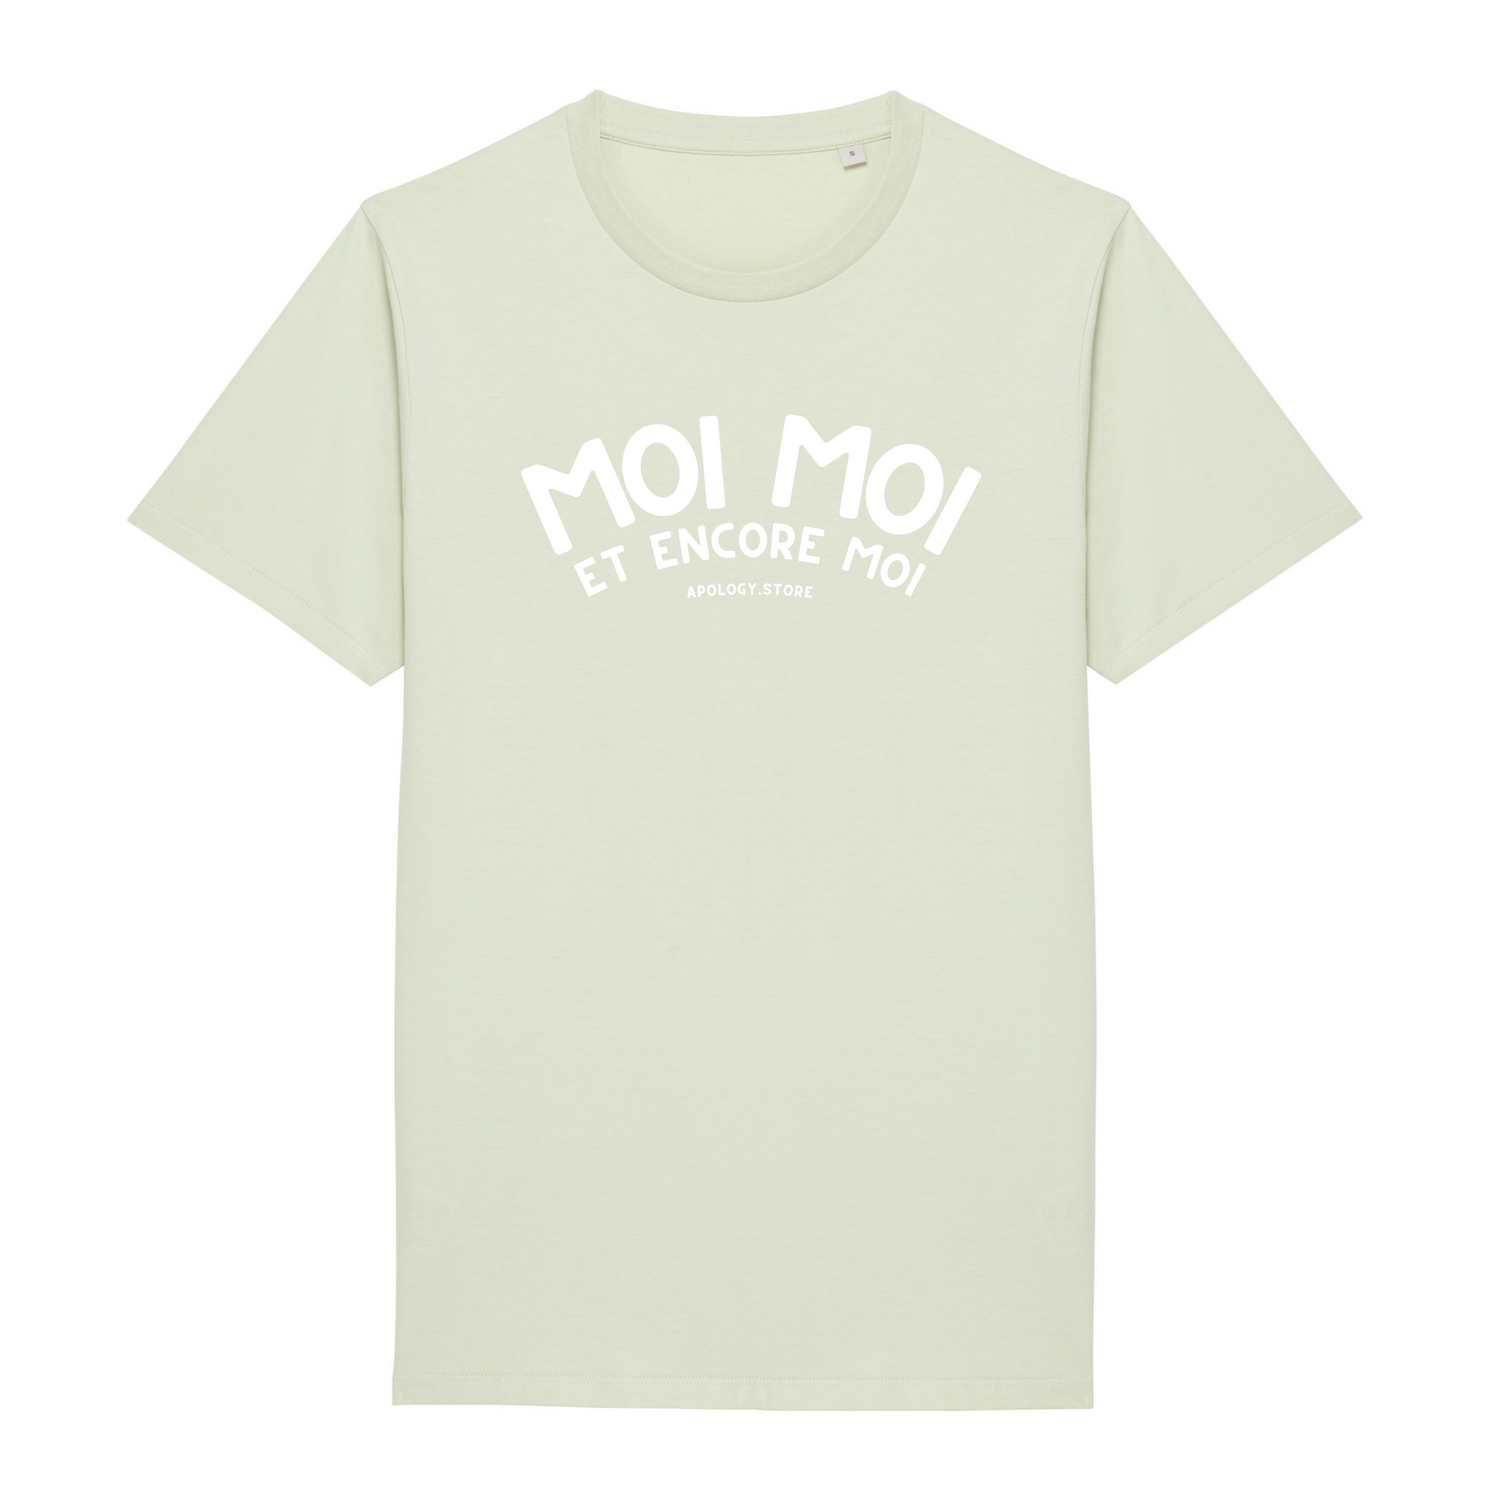 Moi Moi et Encore Moi T-shirt - Made in Portugal